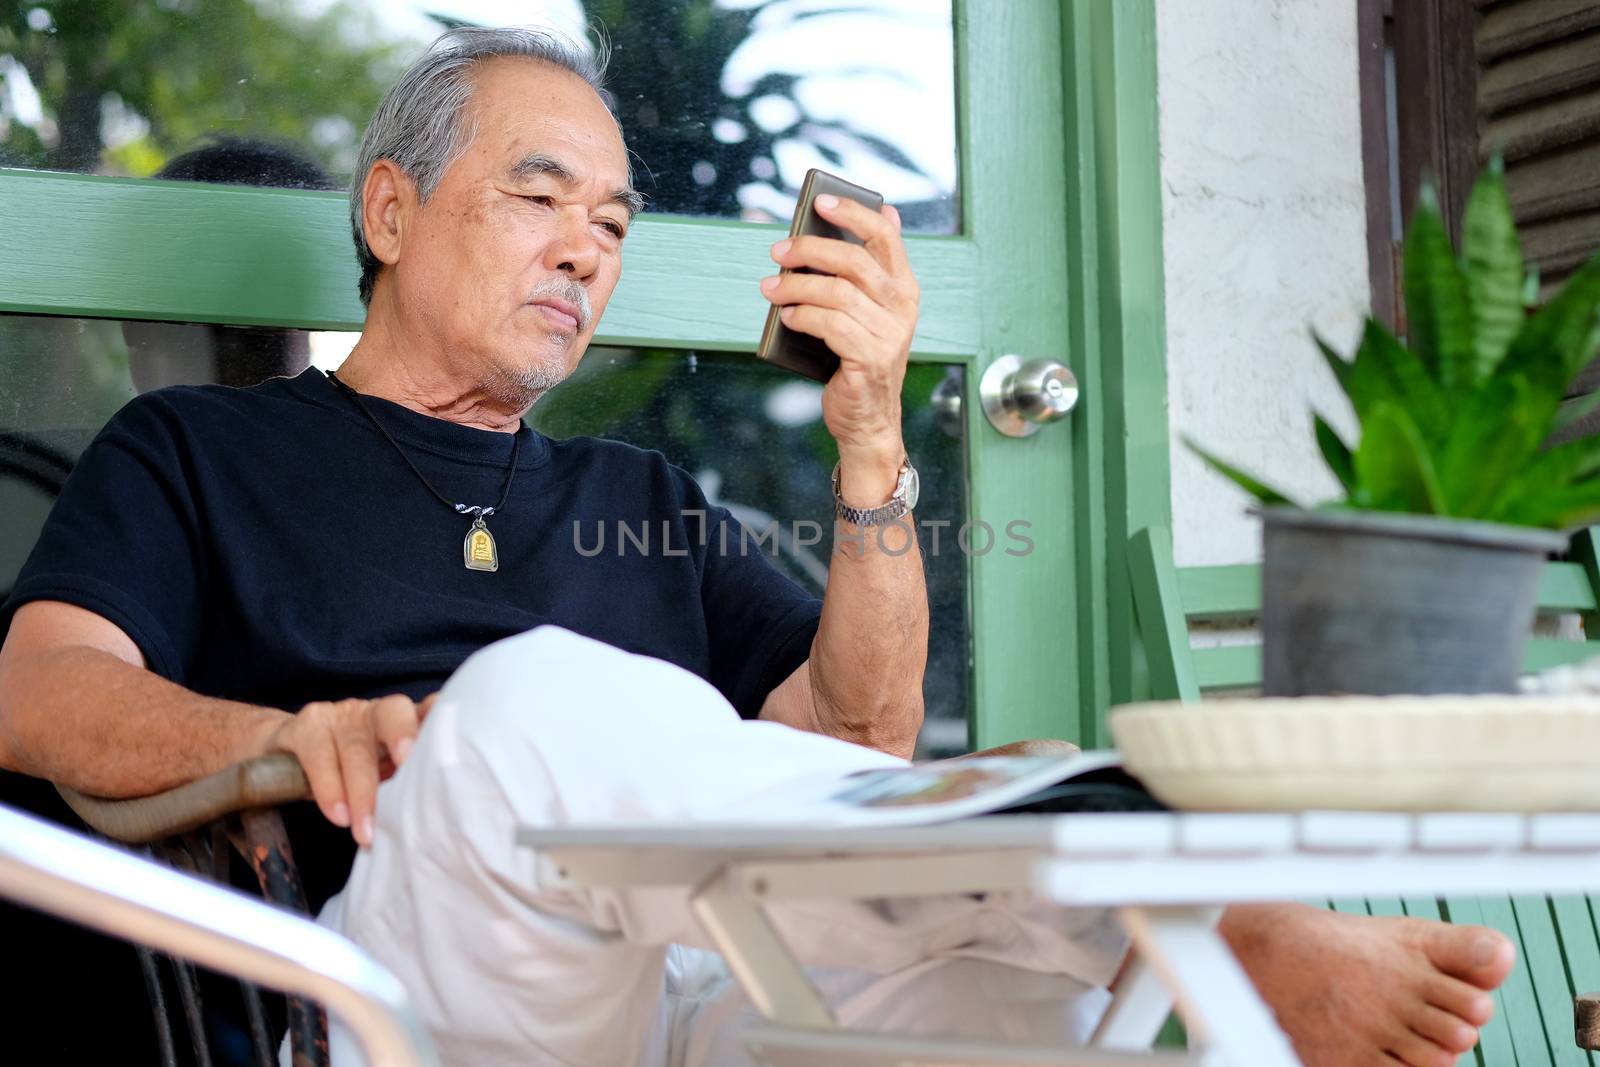 senior man enjoying on his phone